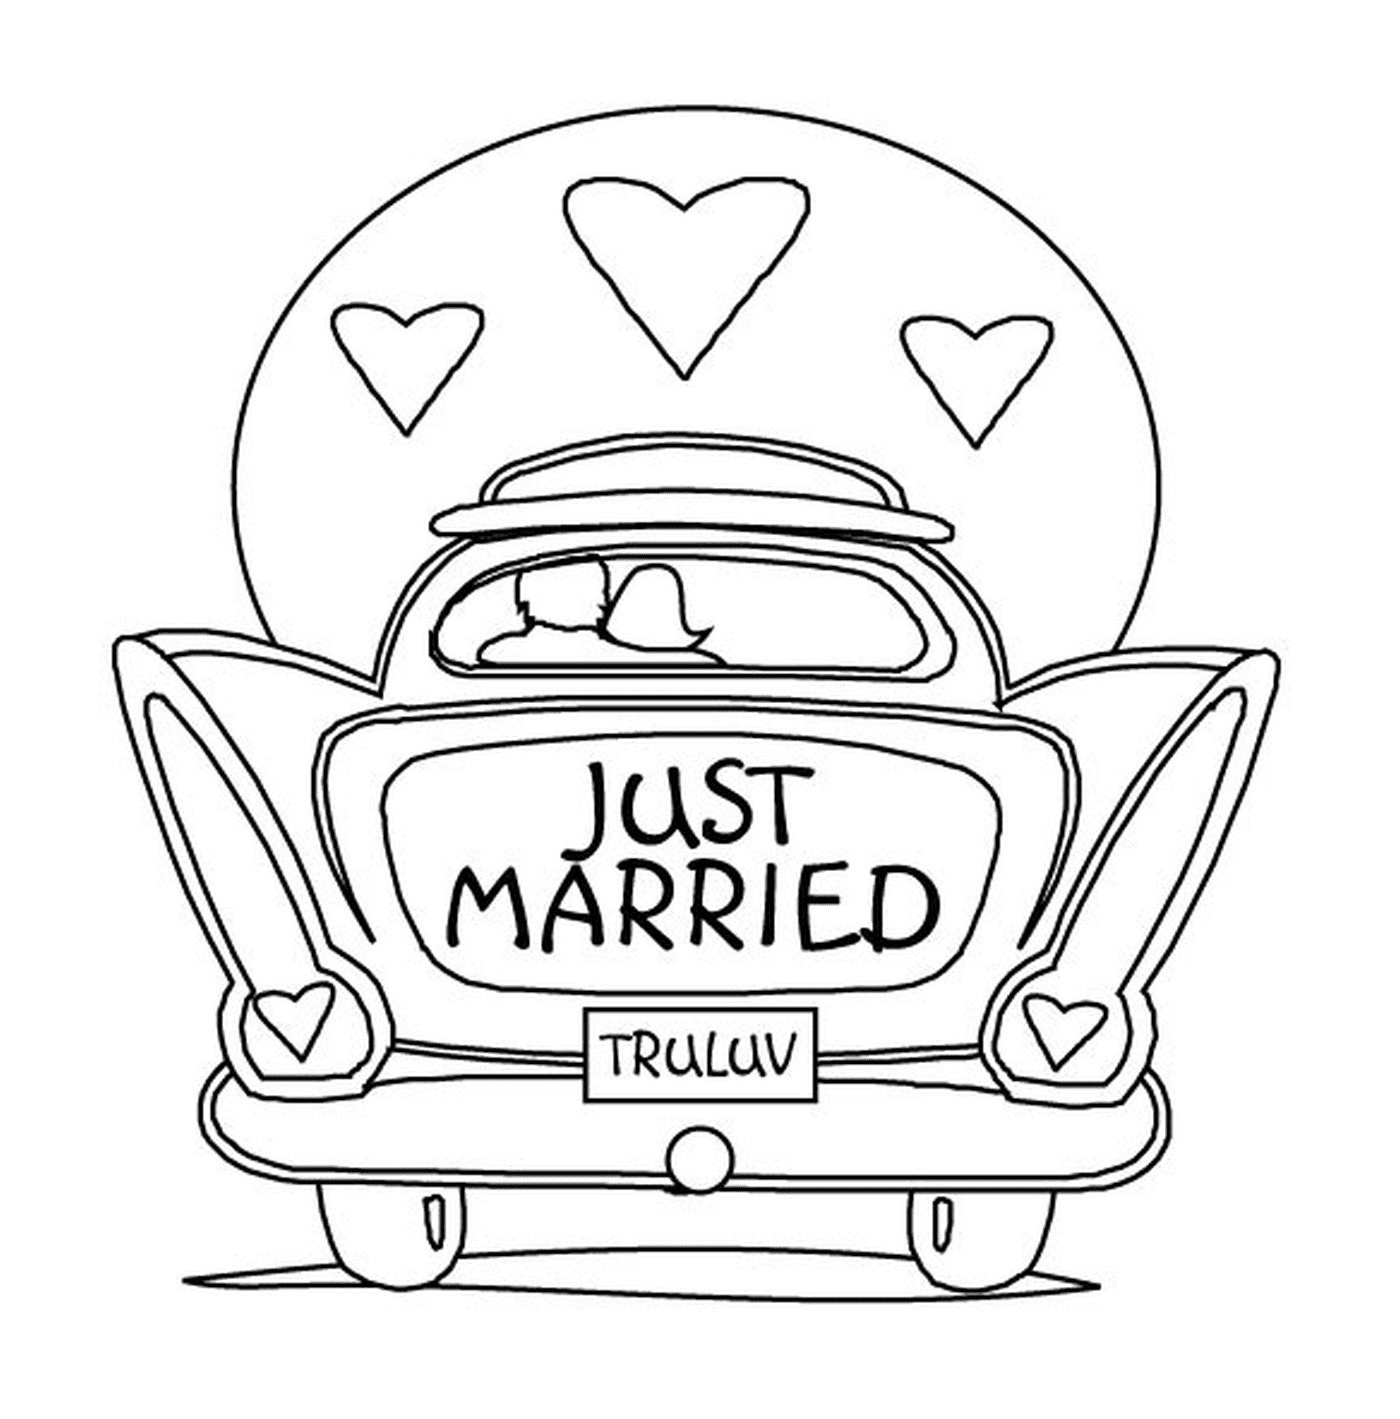  कार की शादी, सिर्फ शादी 